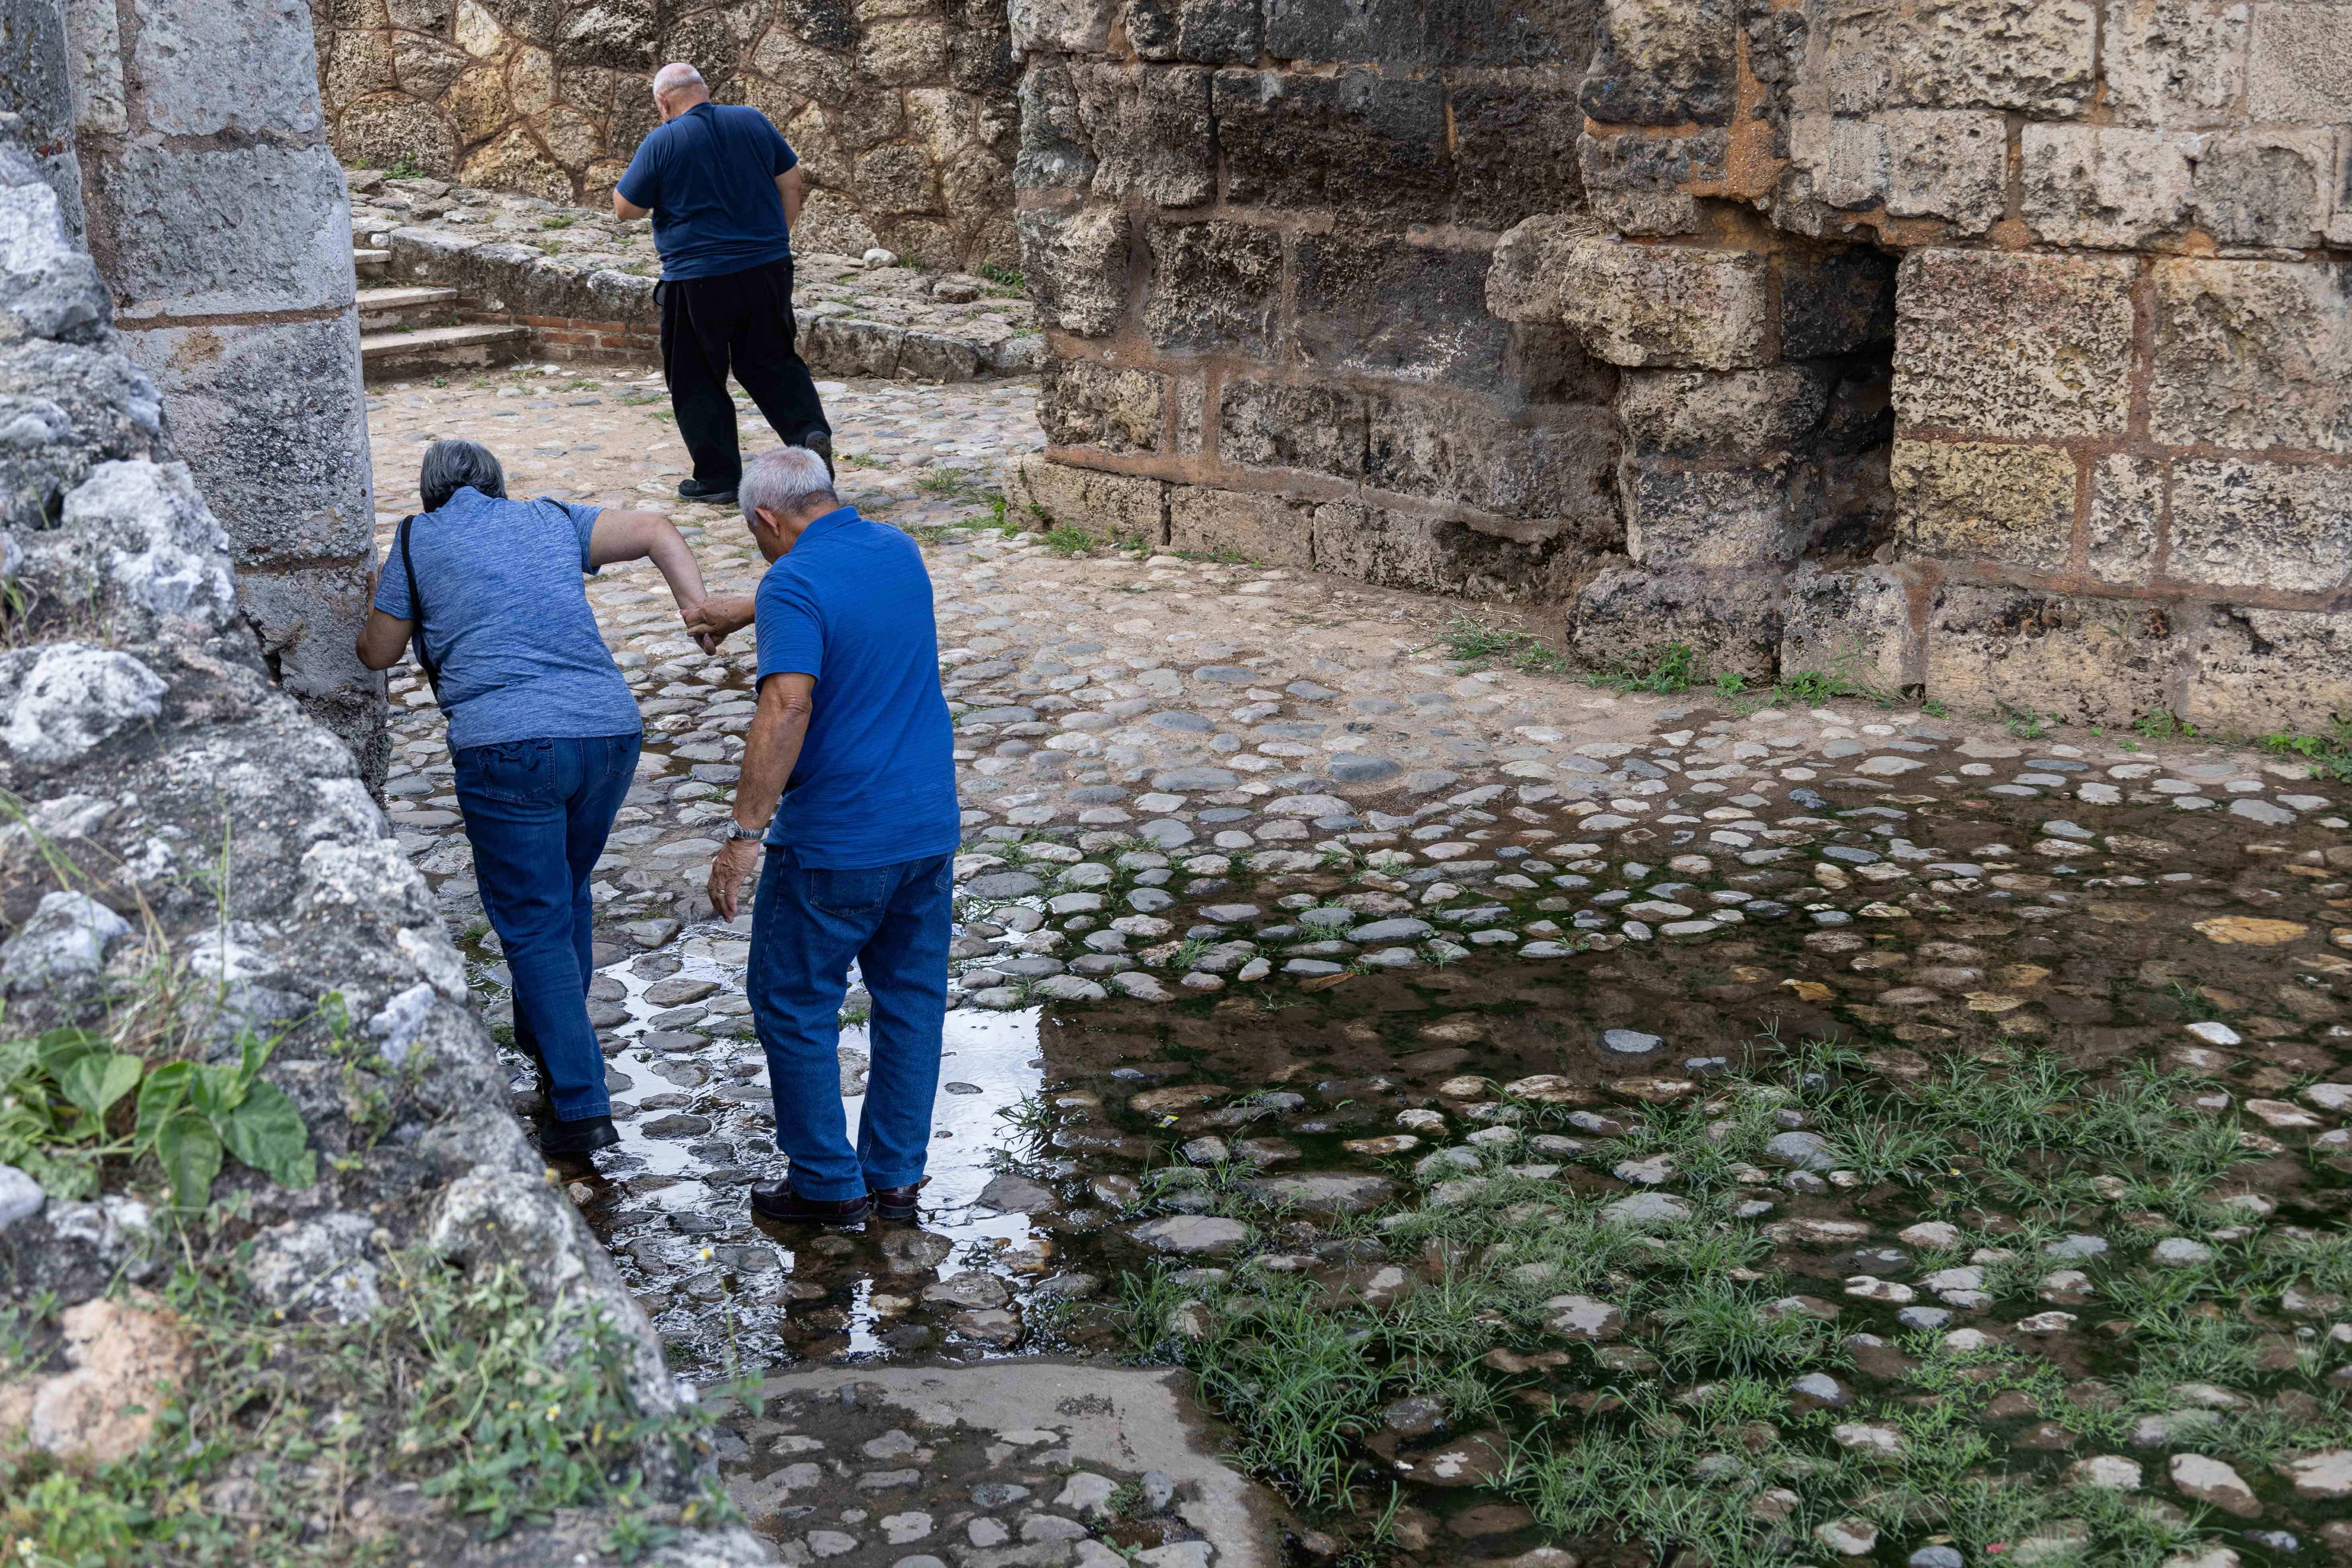 Turistas busca cruzar por un lado donde haya menos agua contaminada.